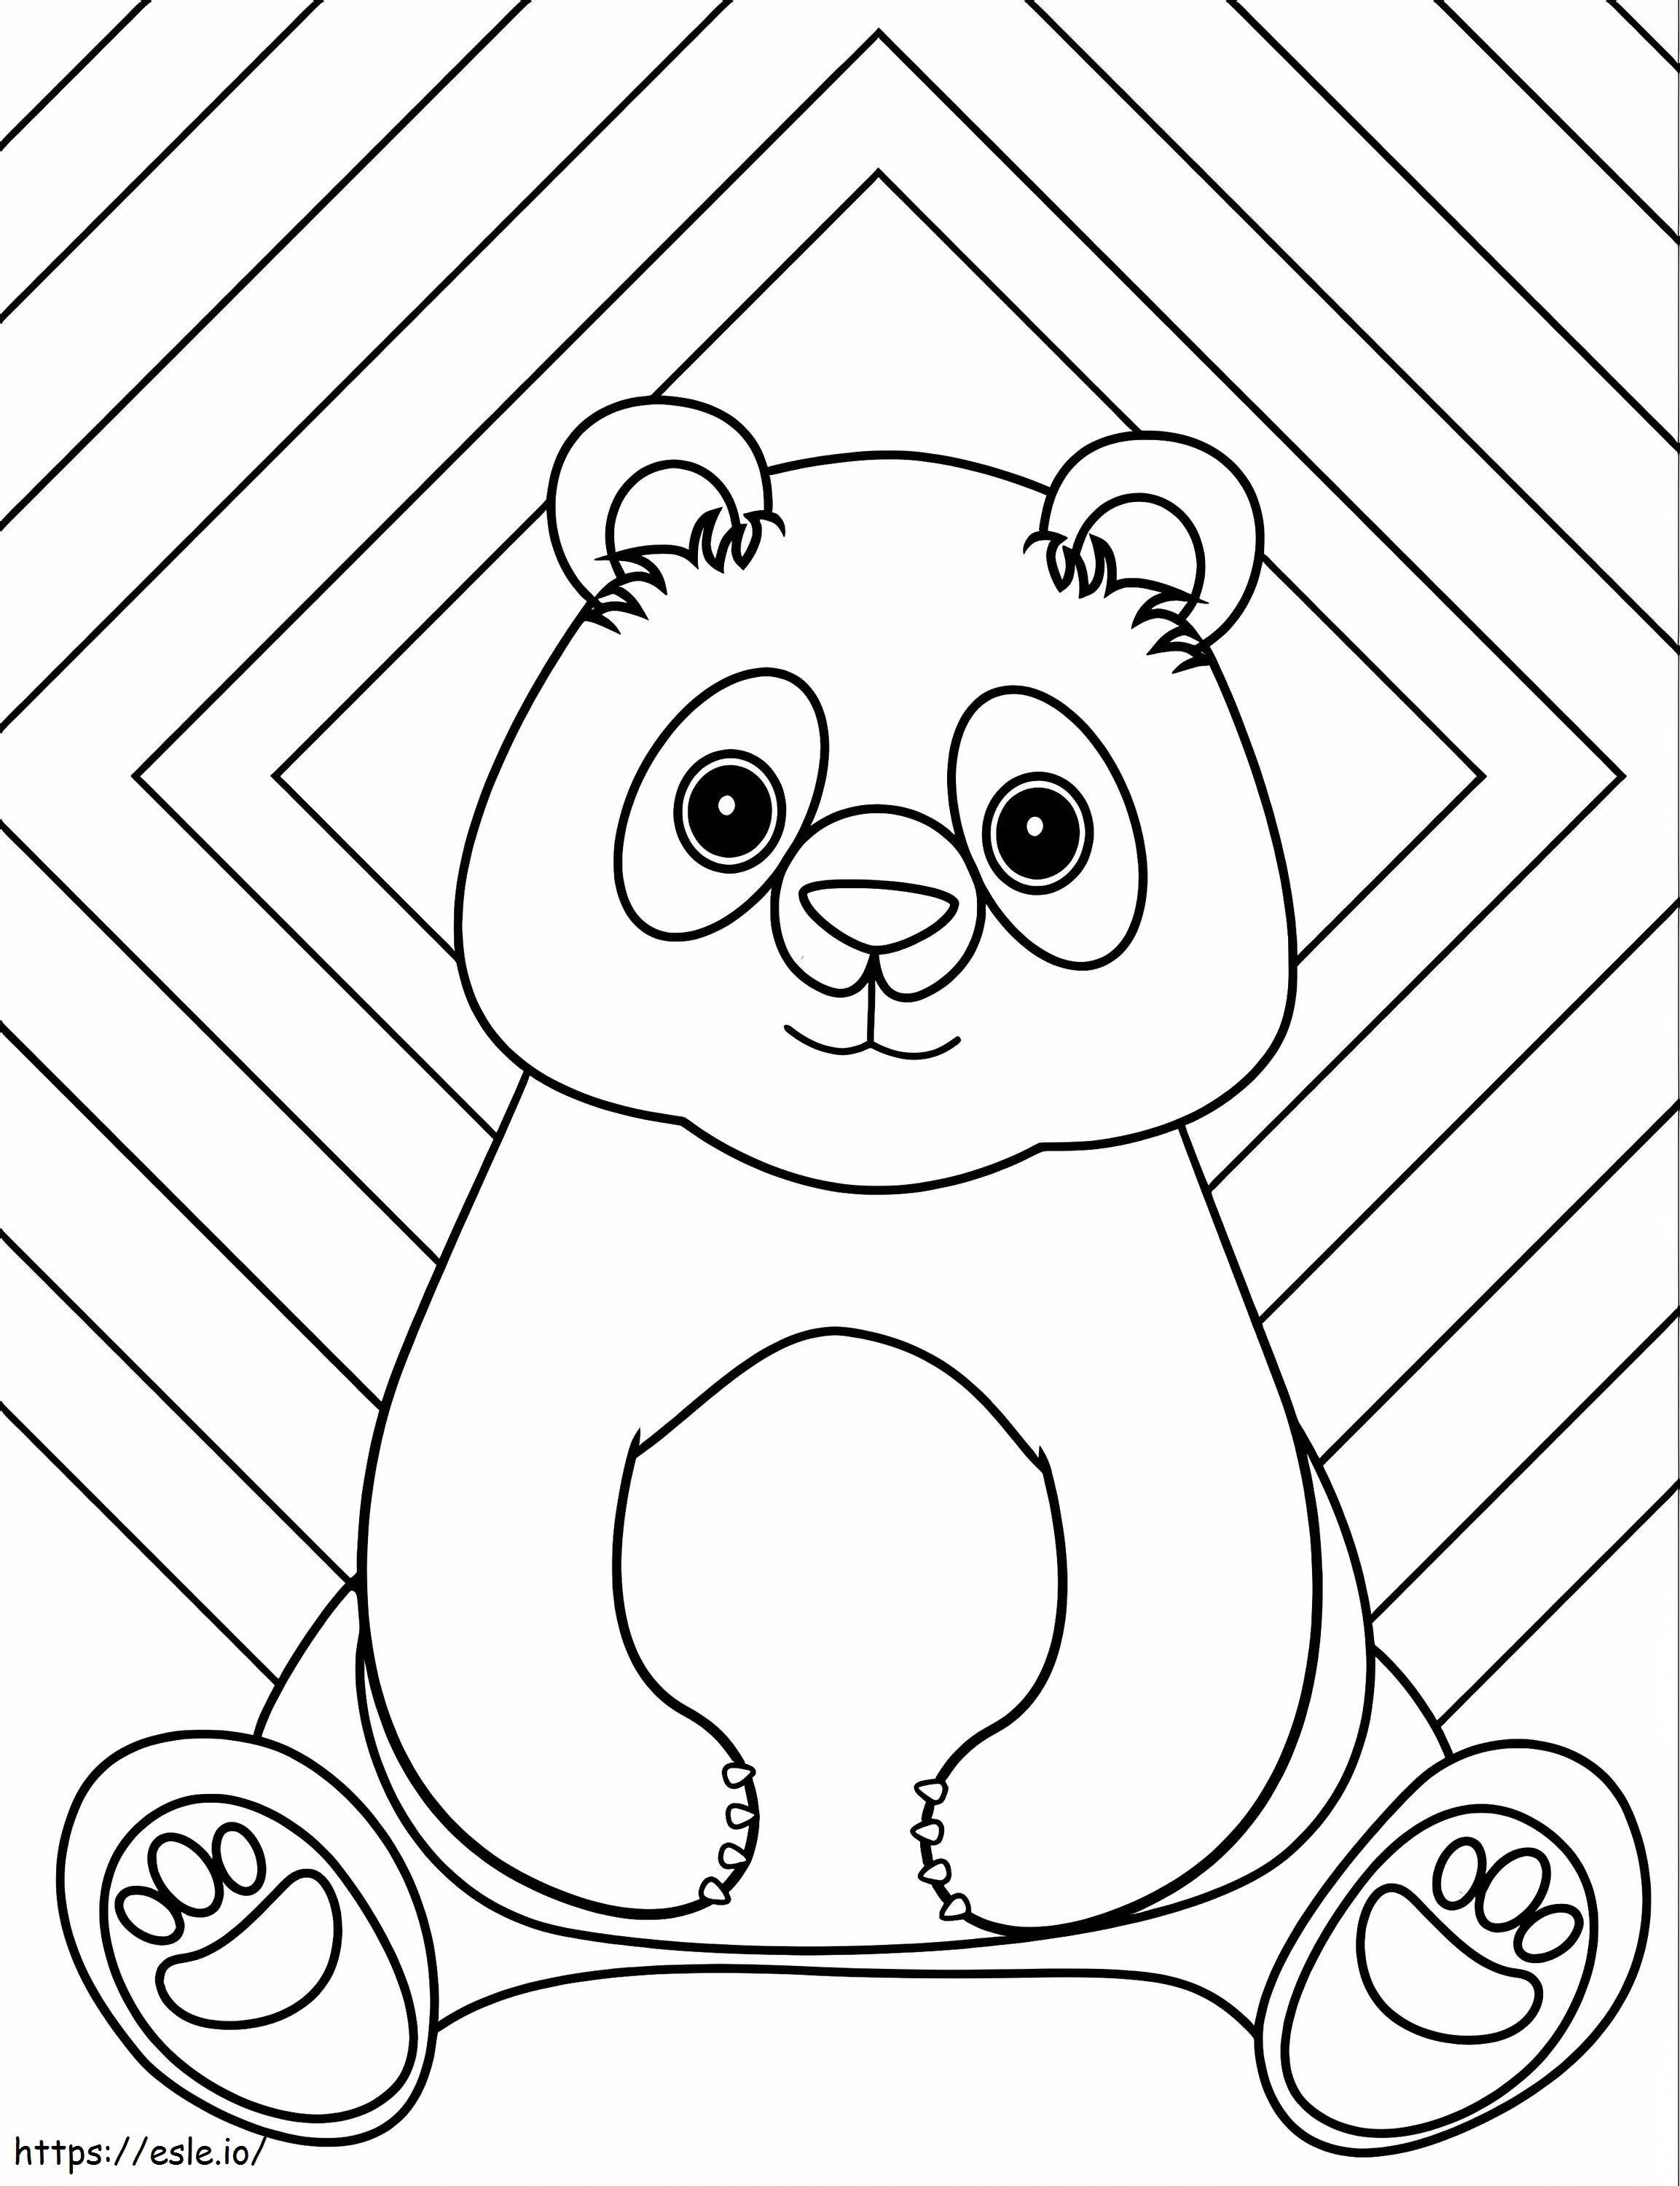 Um panda sentado para colorir